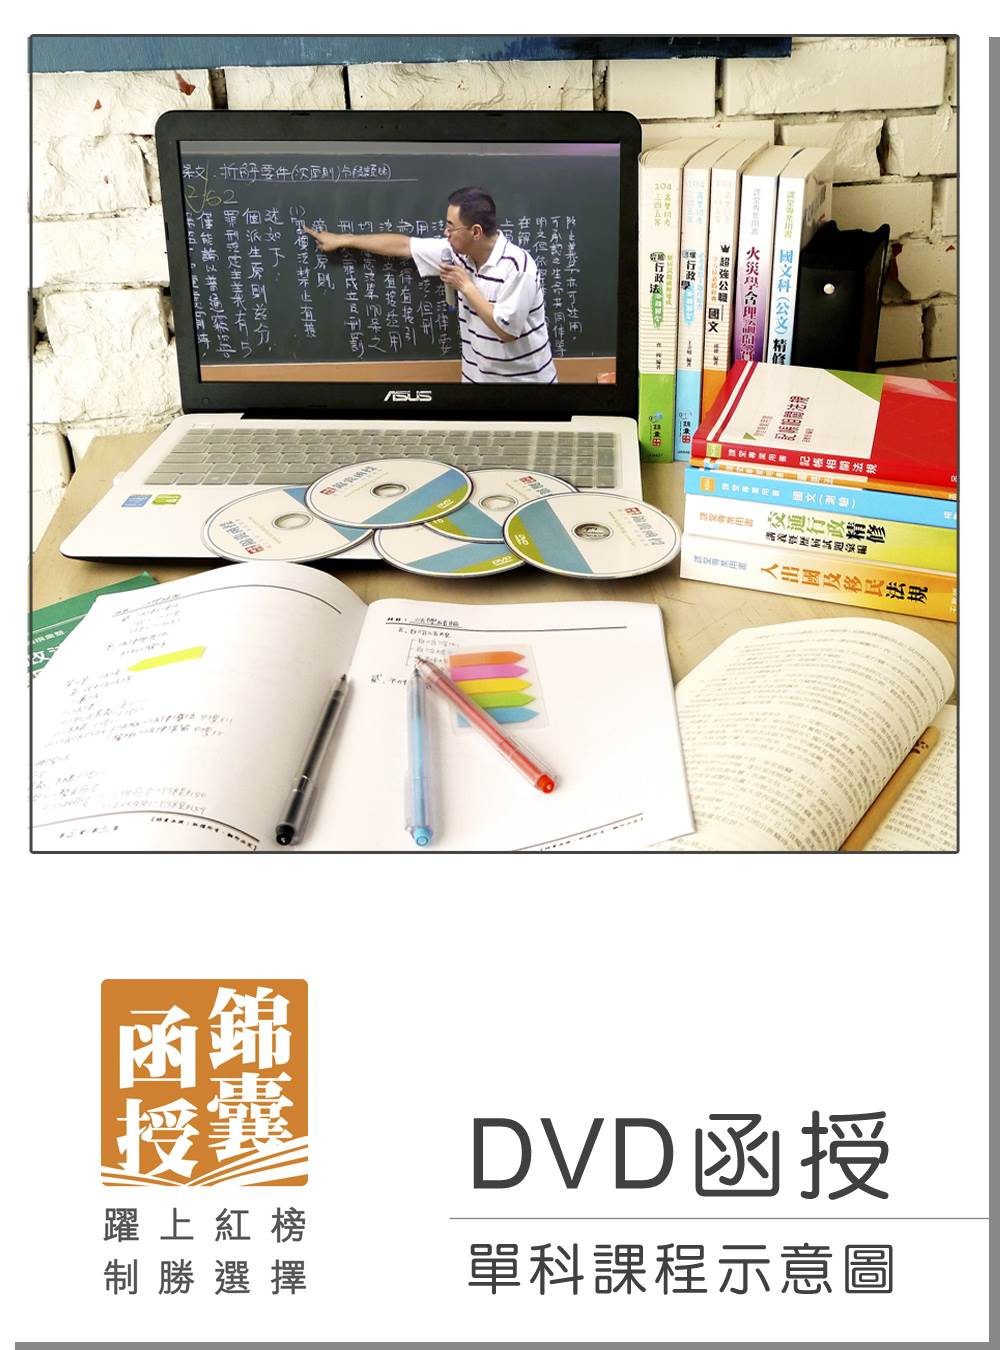 【DVD函授】中級會計學-單科課程(105版)